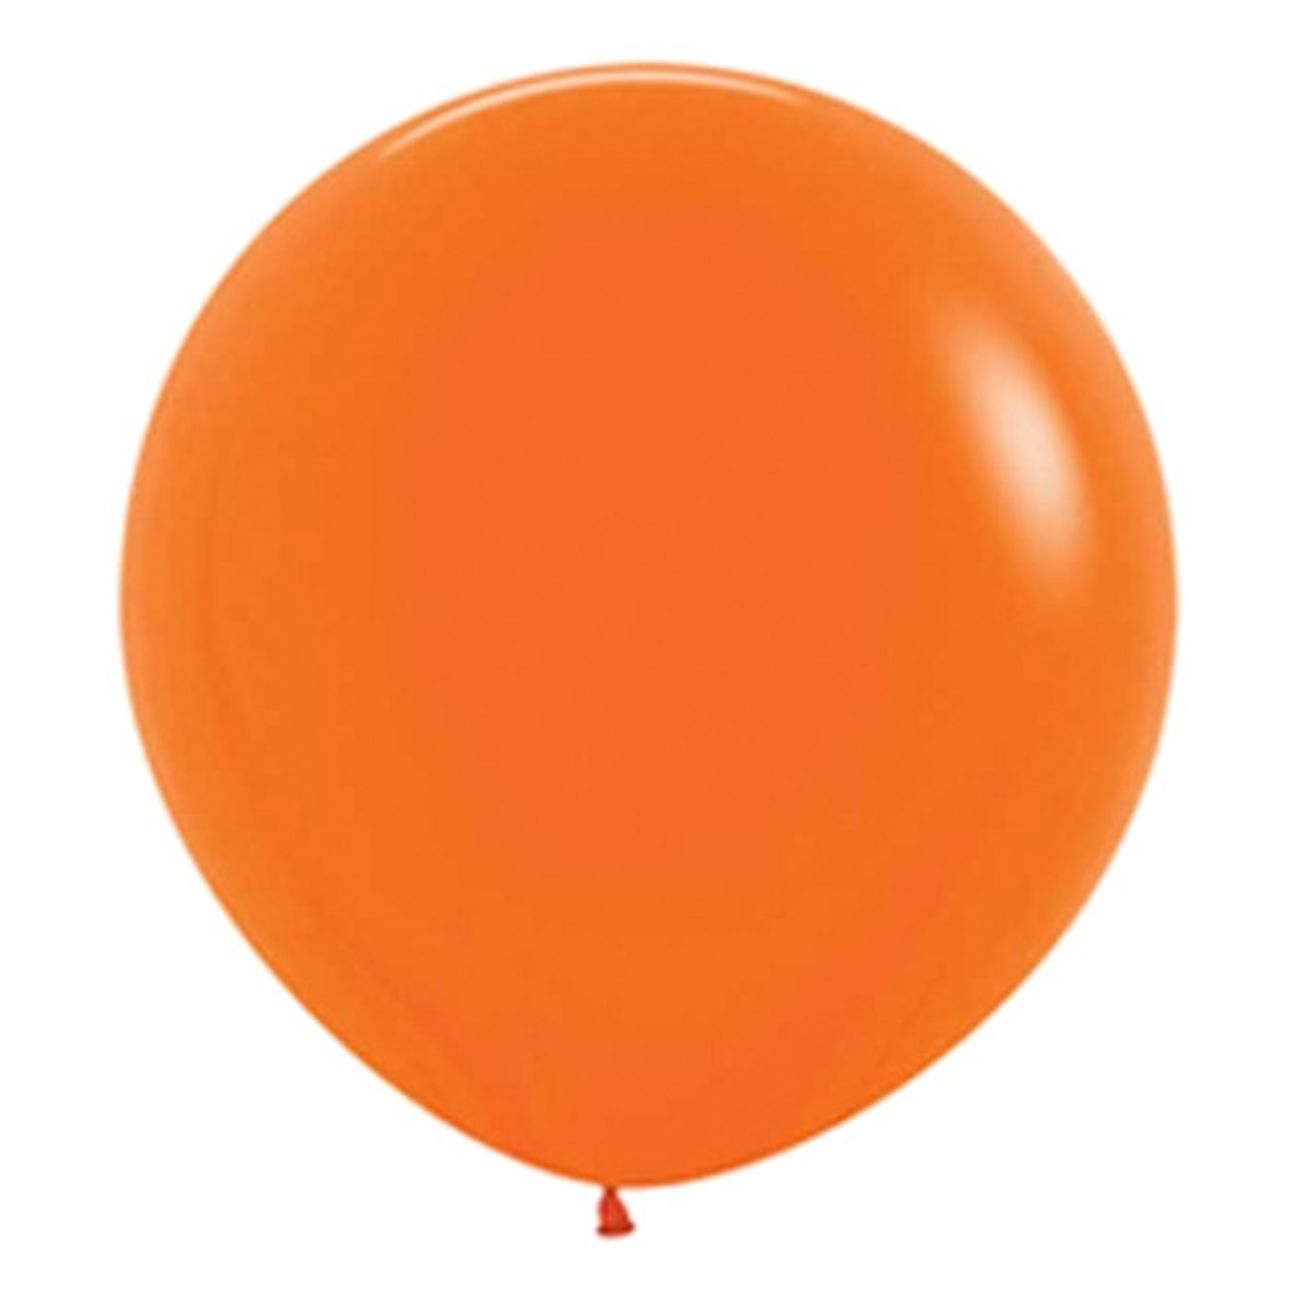 jatteballong-orange-1